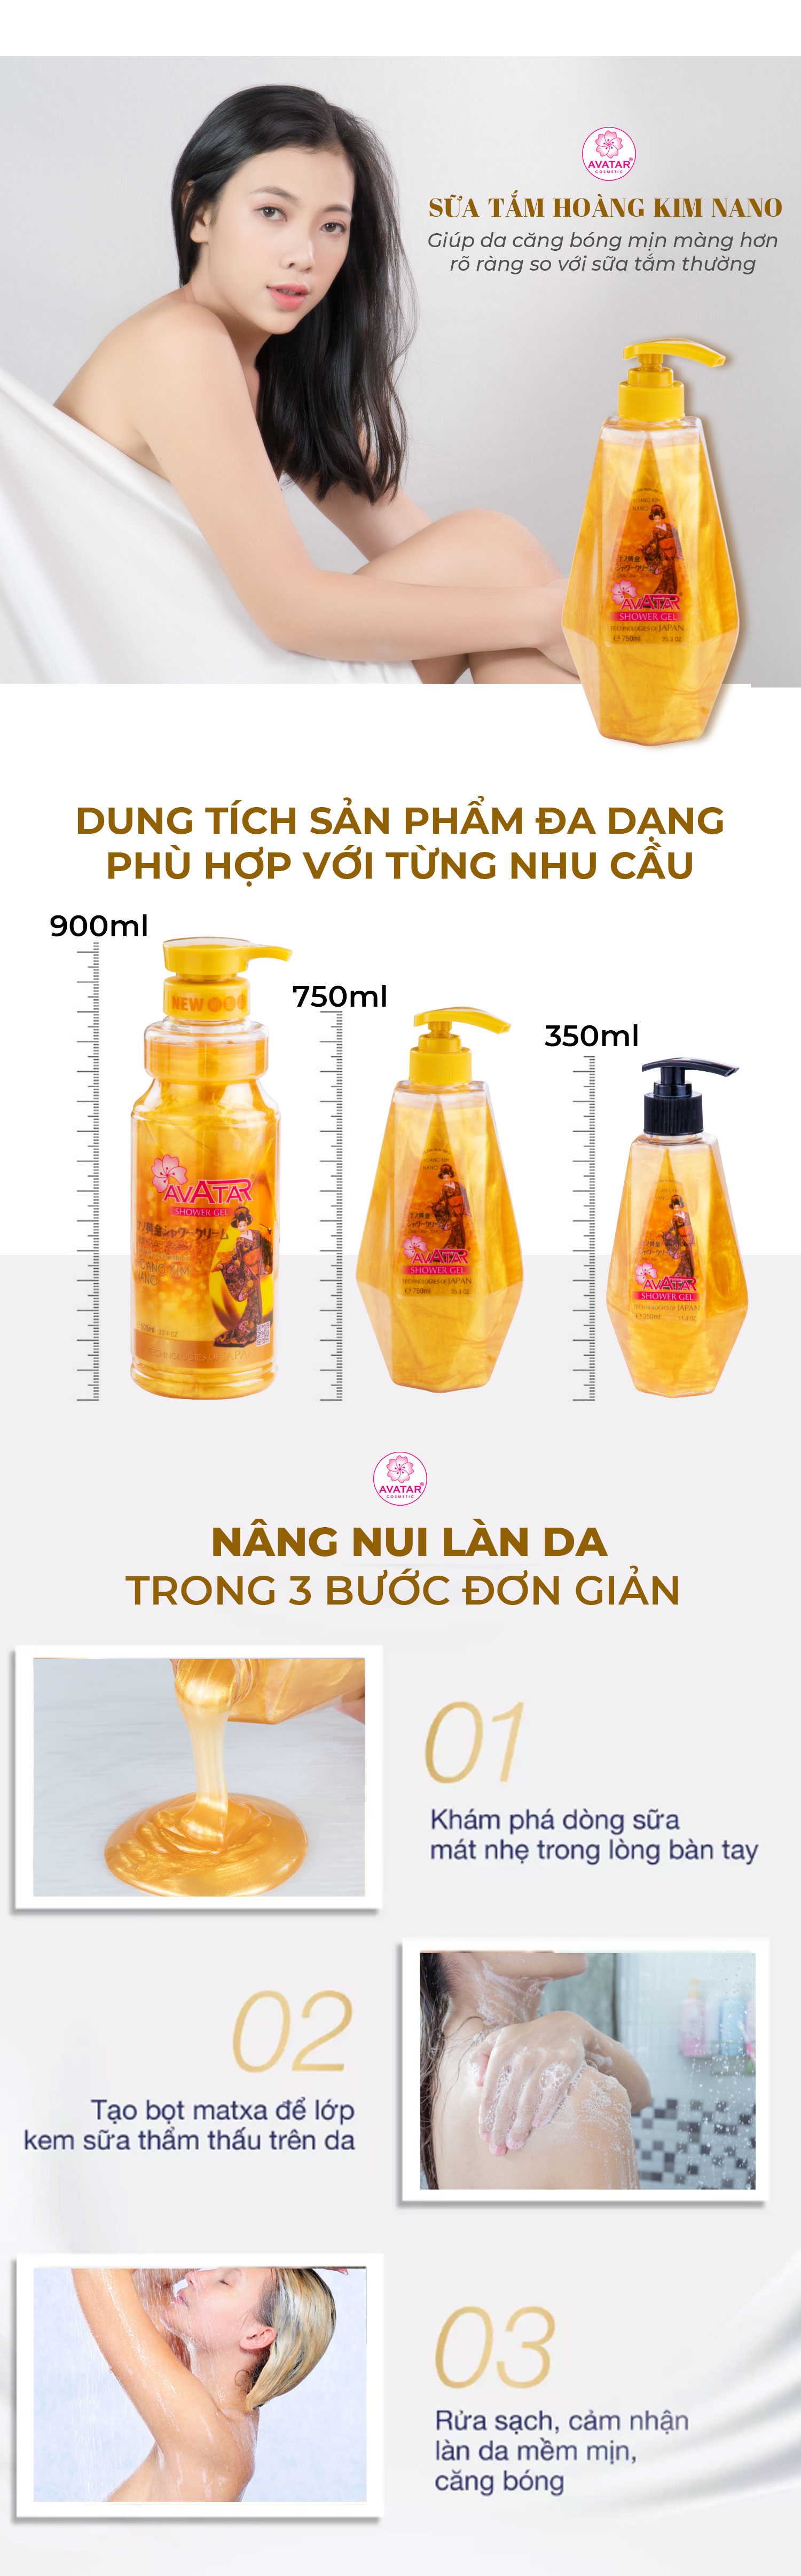 Sữa tắm Hoàng Kim Nano Avatar 350ml - giảm thiểu hắc tố cho làn da sáng đều màu (thích hợp cho cả gia đình)